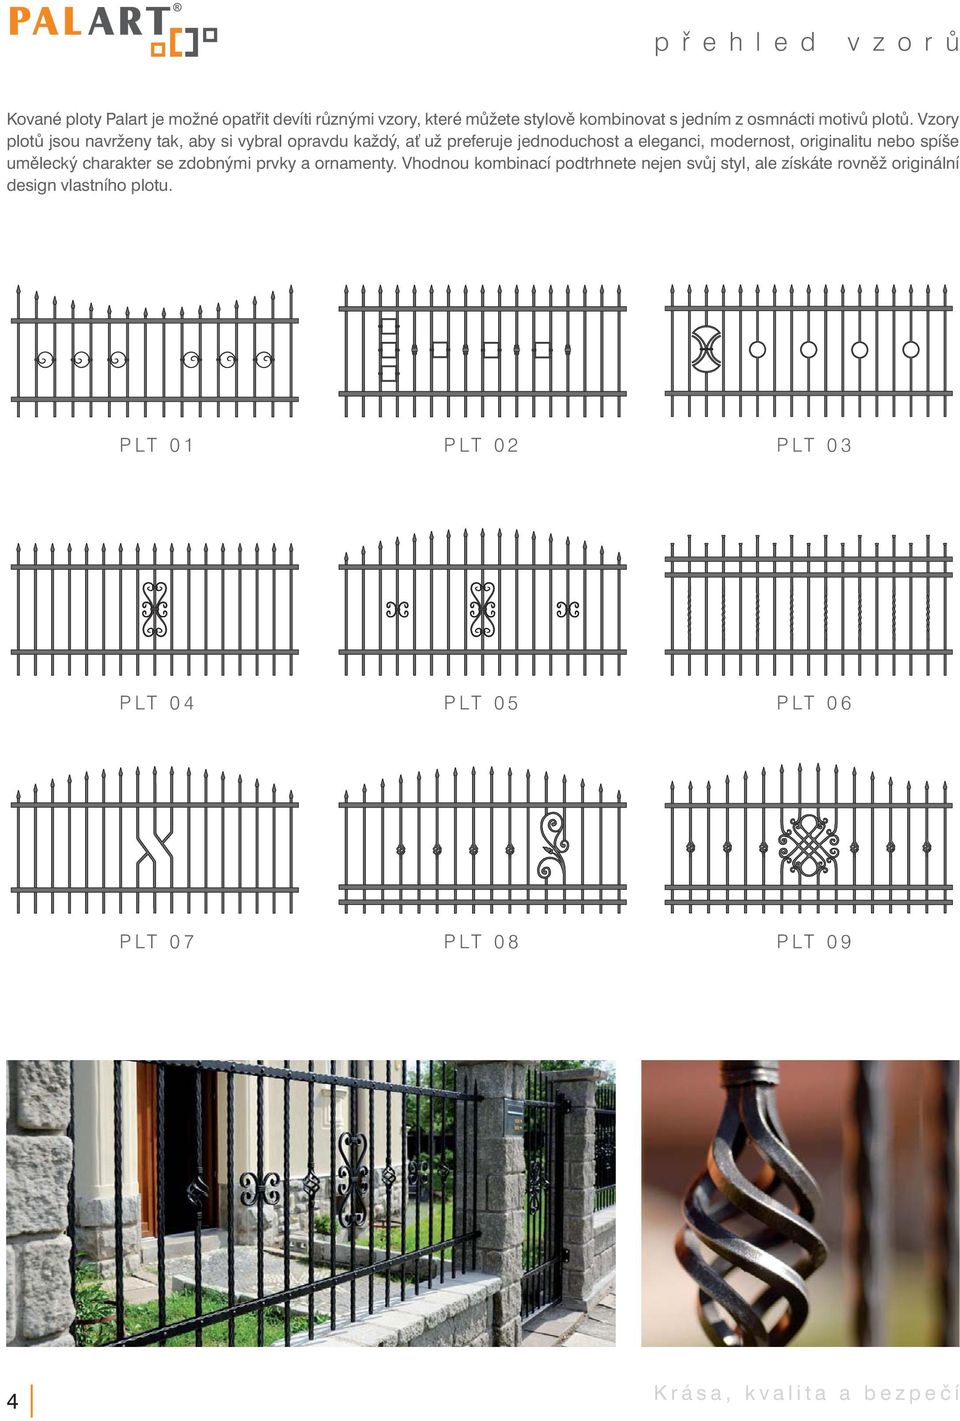 Vzory plotů jsou navrženy tak, aby si vybral opravdu každý, ať už preferuje jednoduchost a eleganci, modernost, originalitu nebo